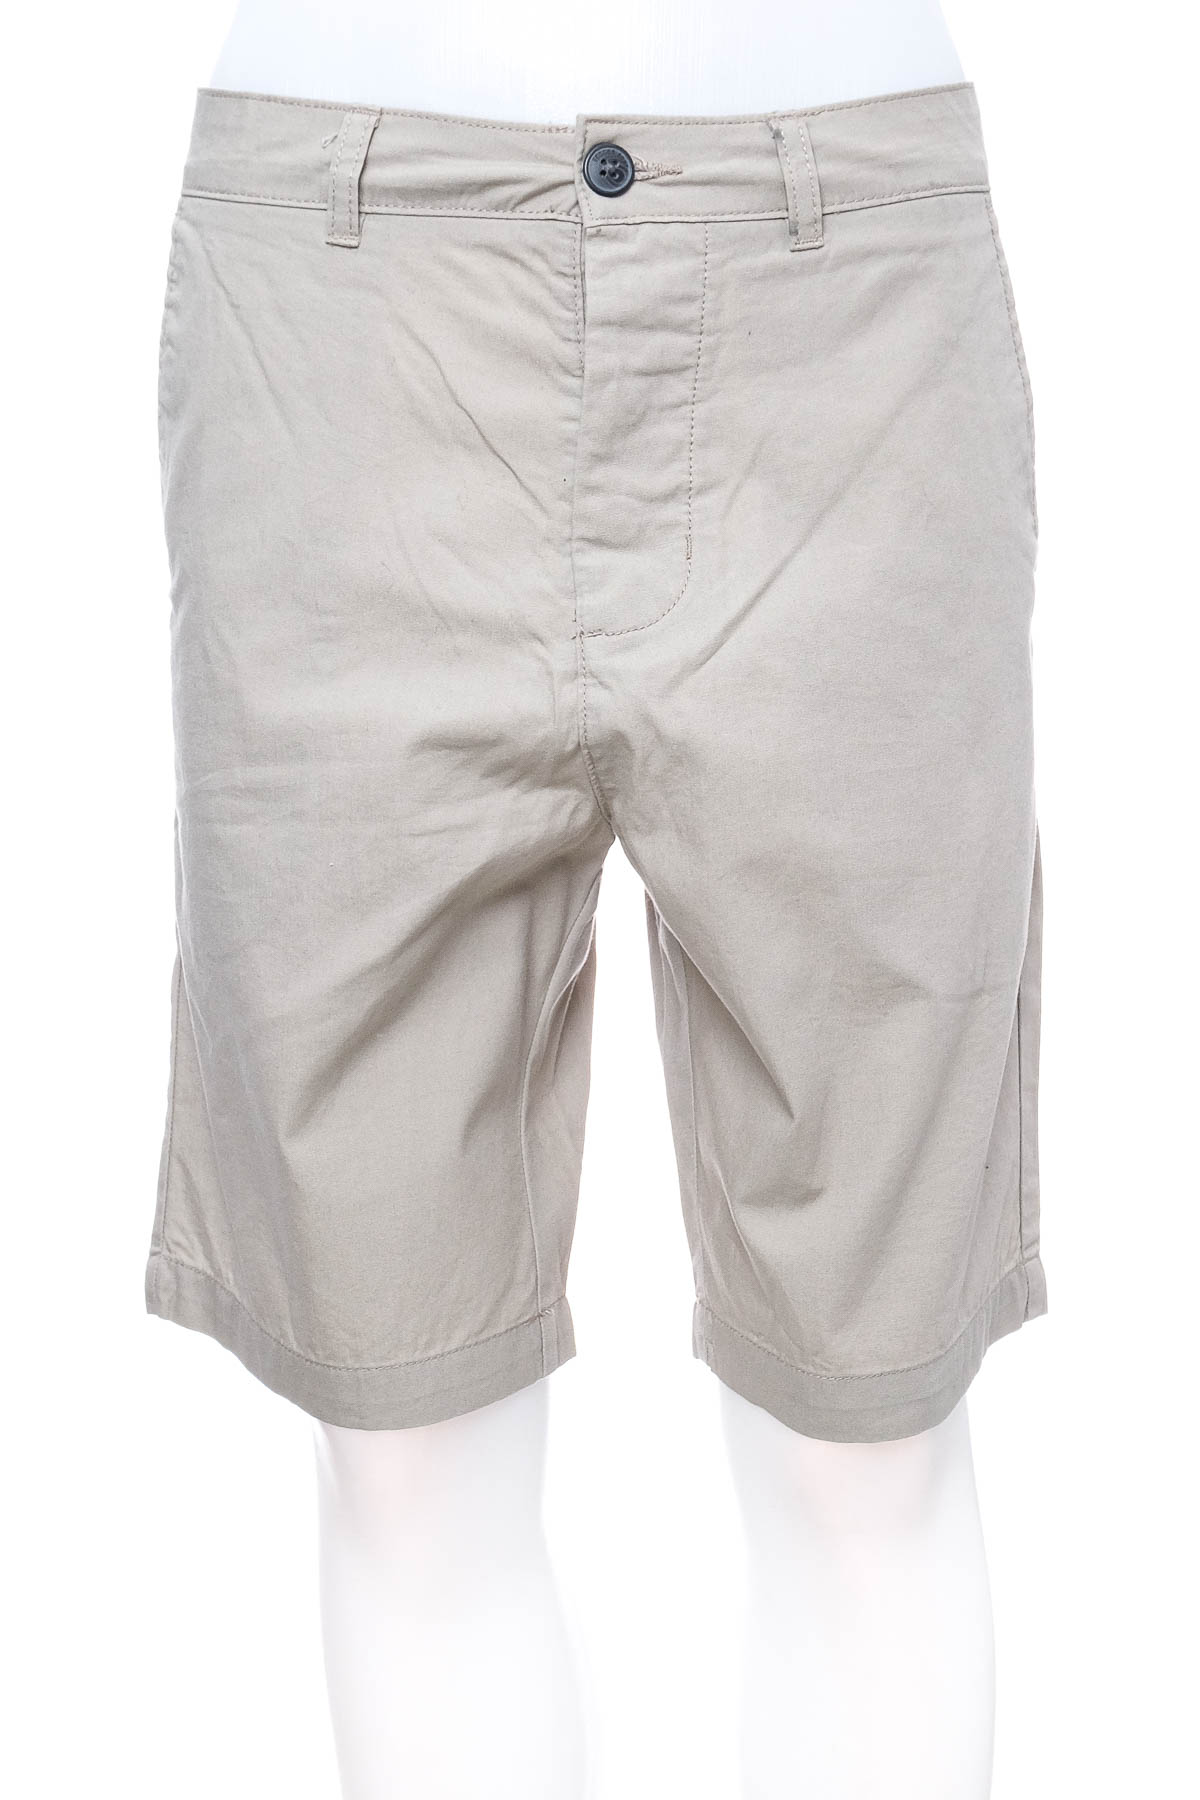 Pantaloni scurți bărbați - DIVIDED - 0